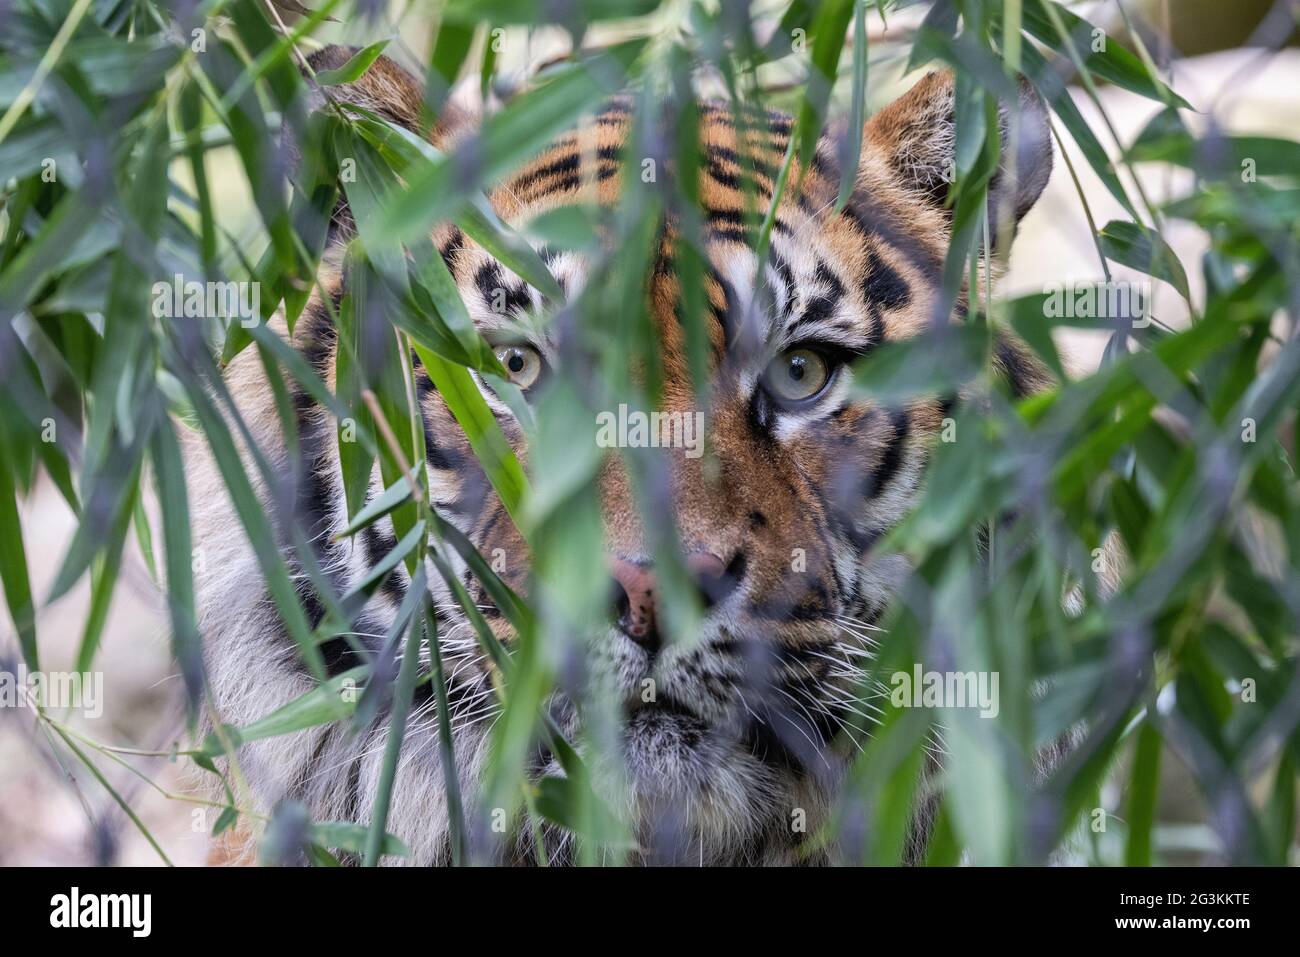 Critically endangered Sumatran Tiger in an Australian Zoo Stock Photo